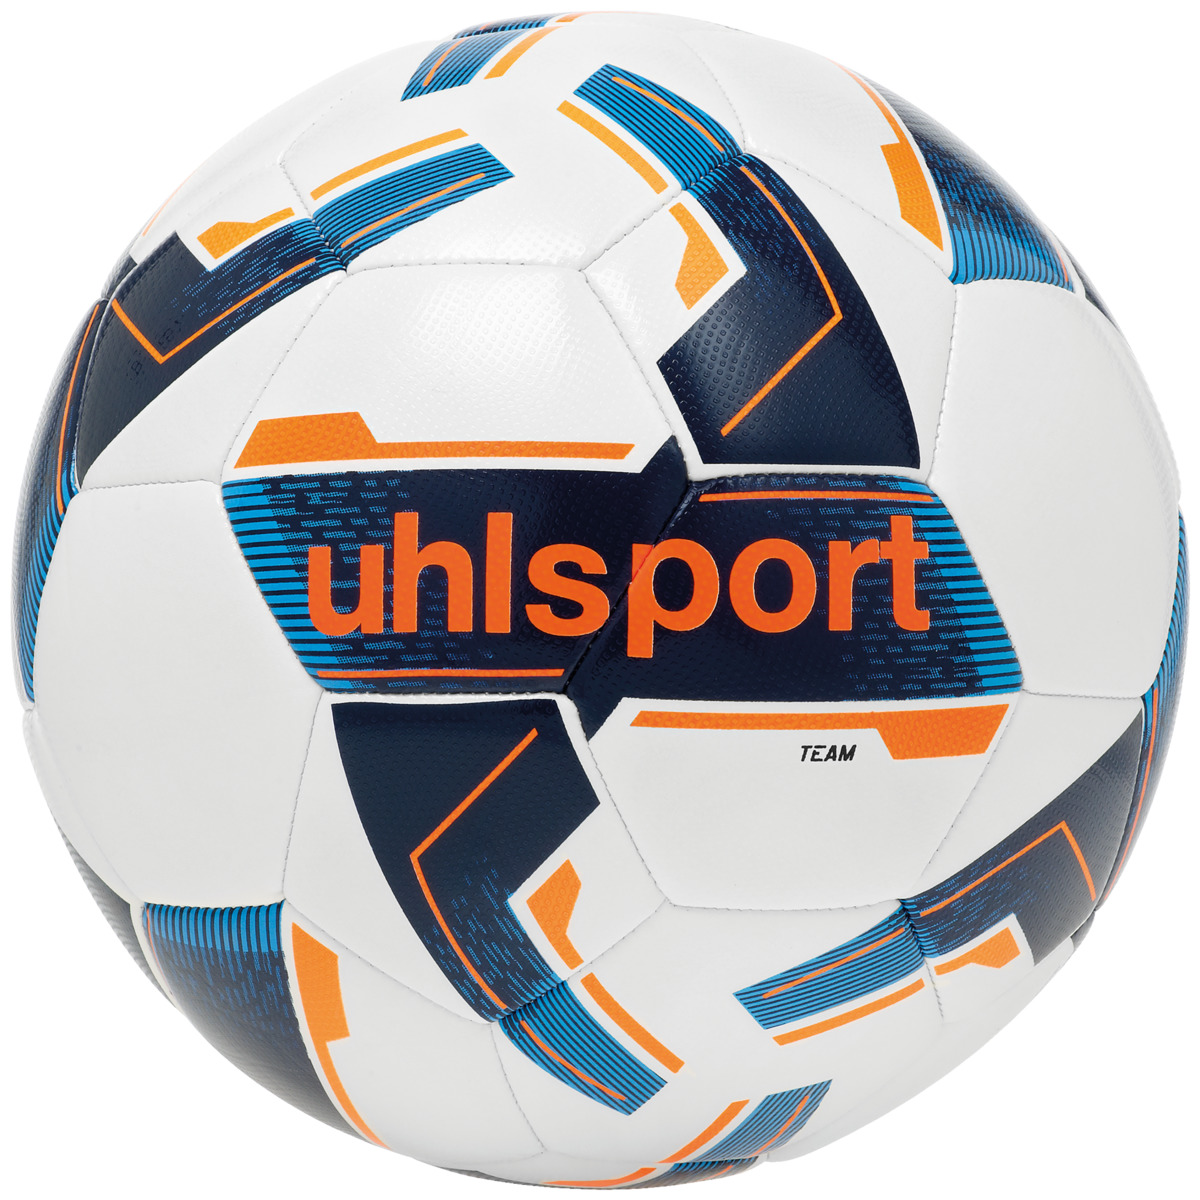 Uhlsport Team Voetbal